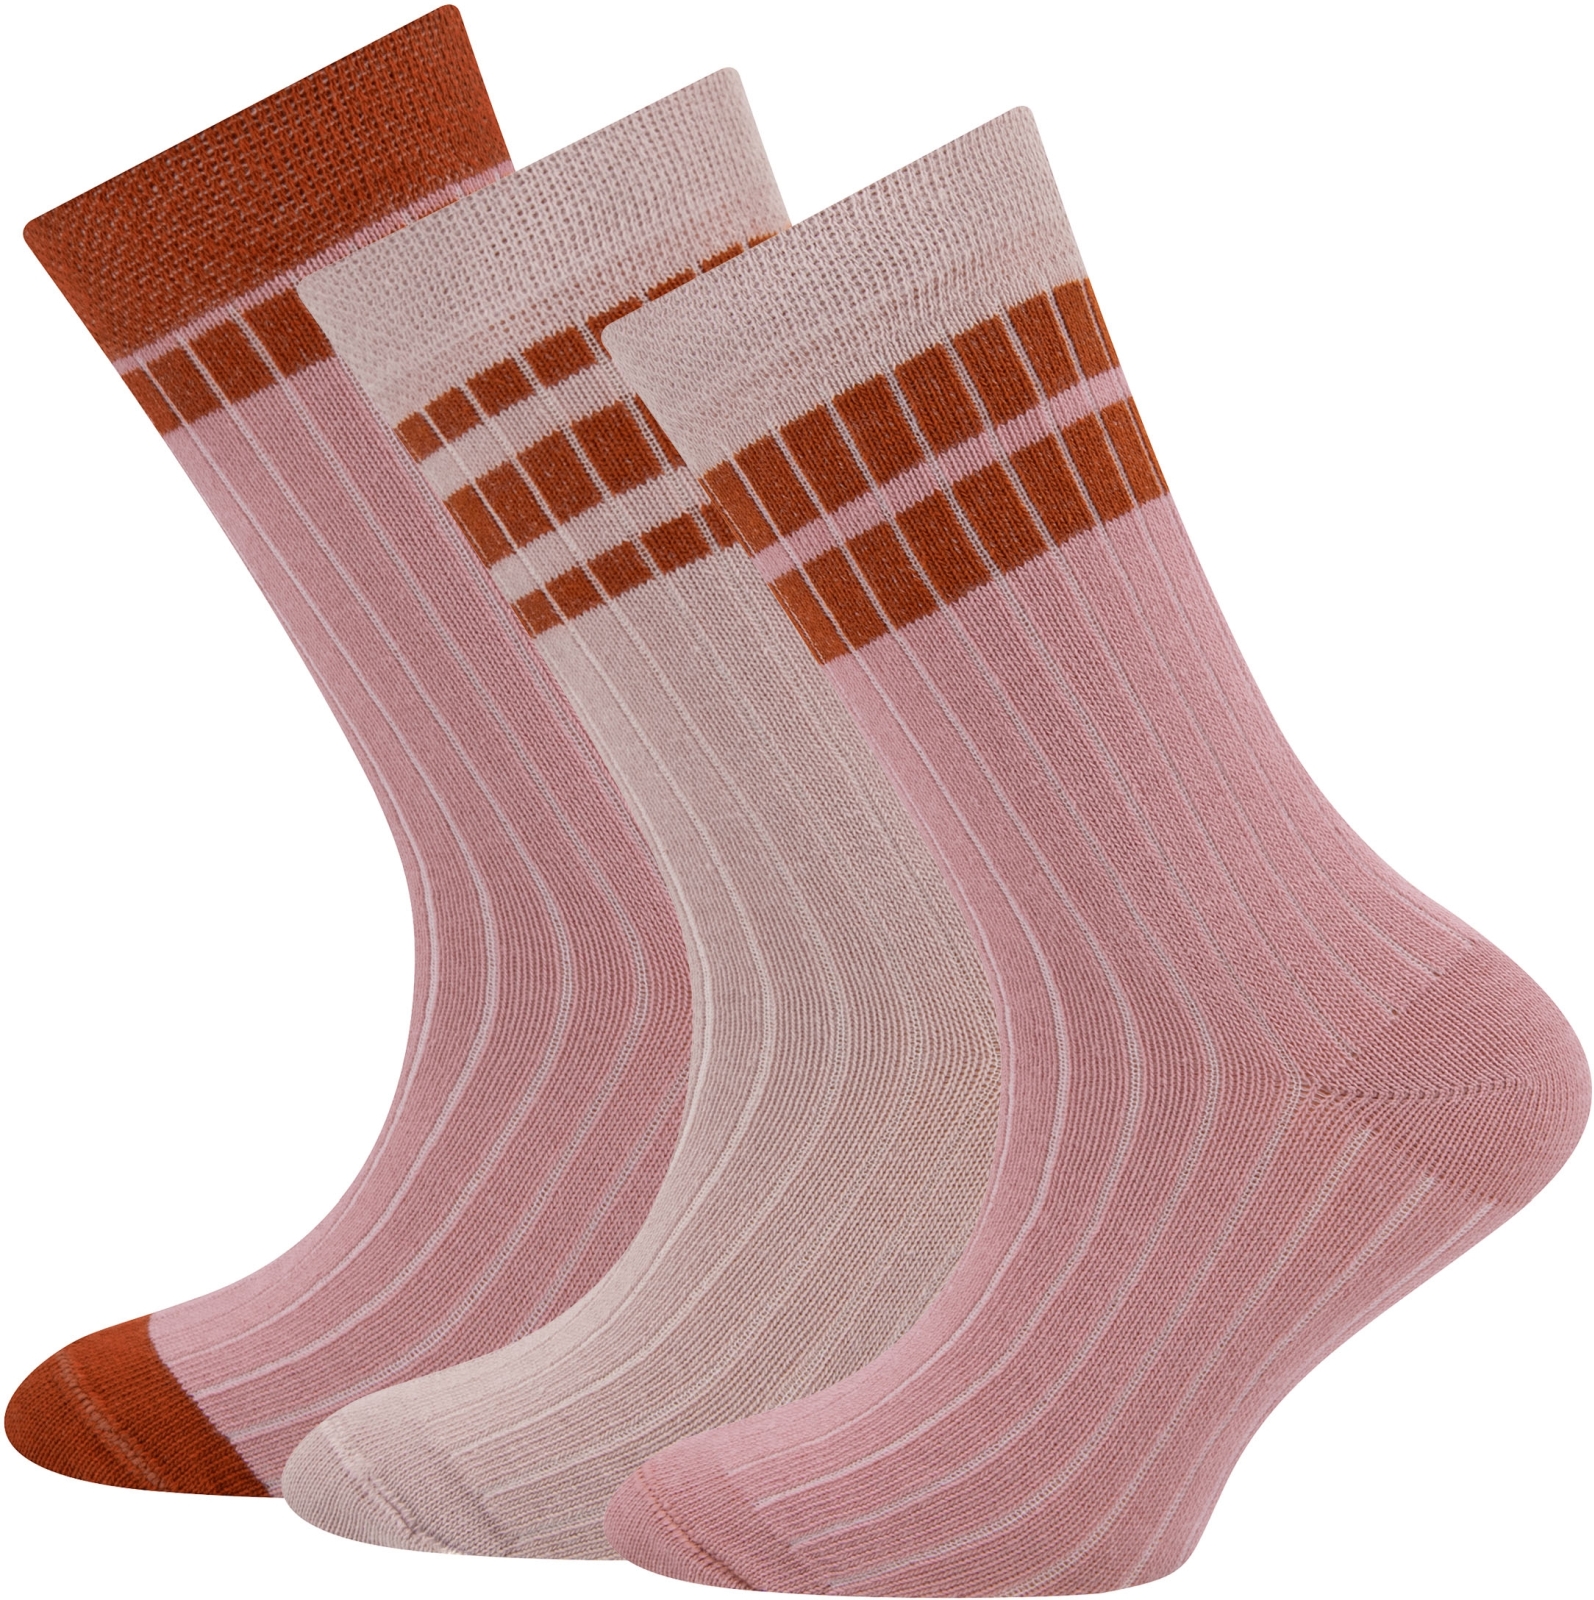 Ewers Socken 3er Pack Rippe/Ringel - 0001 39-42